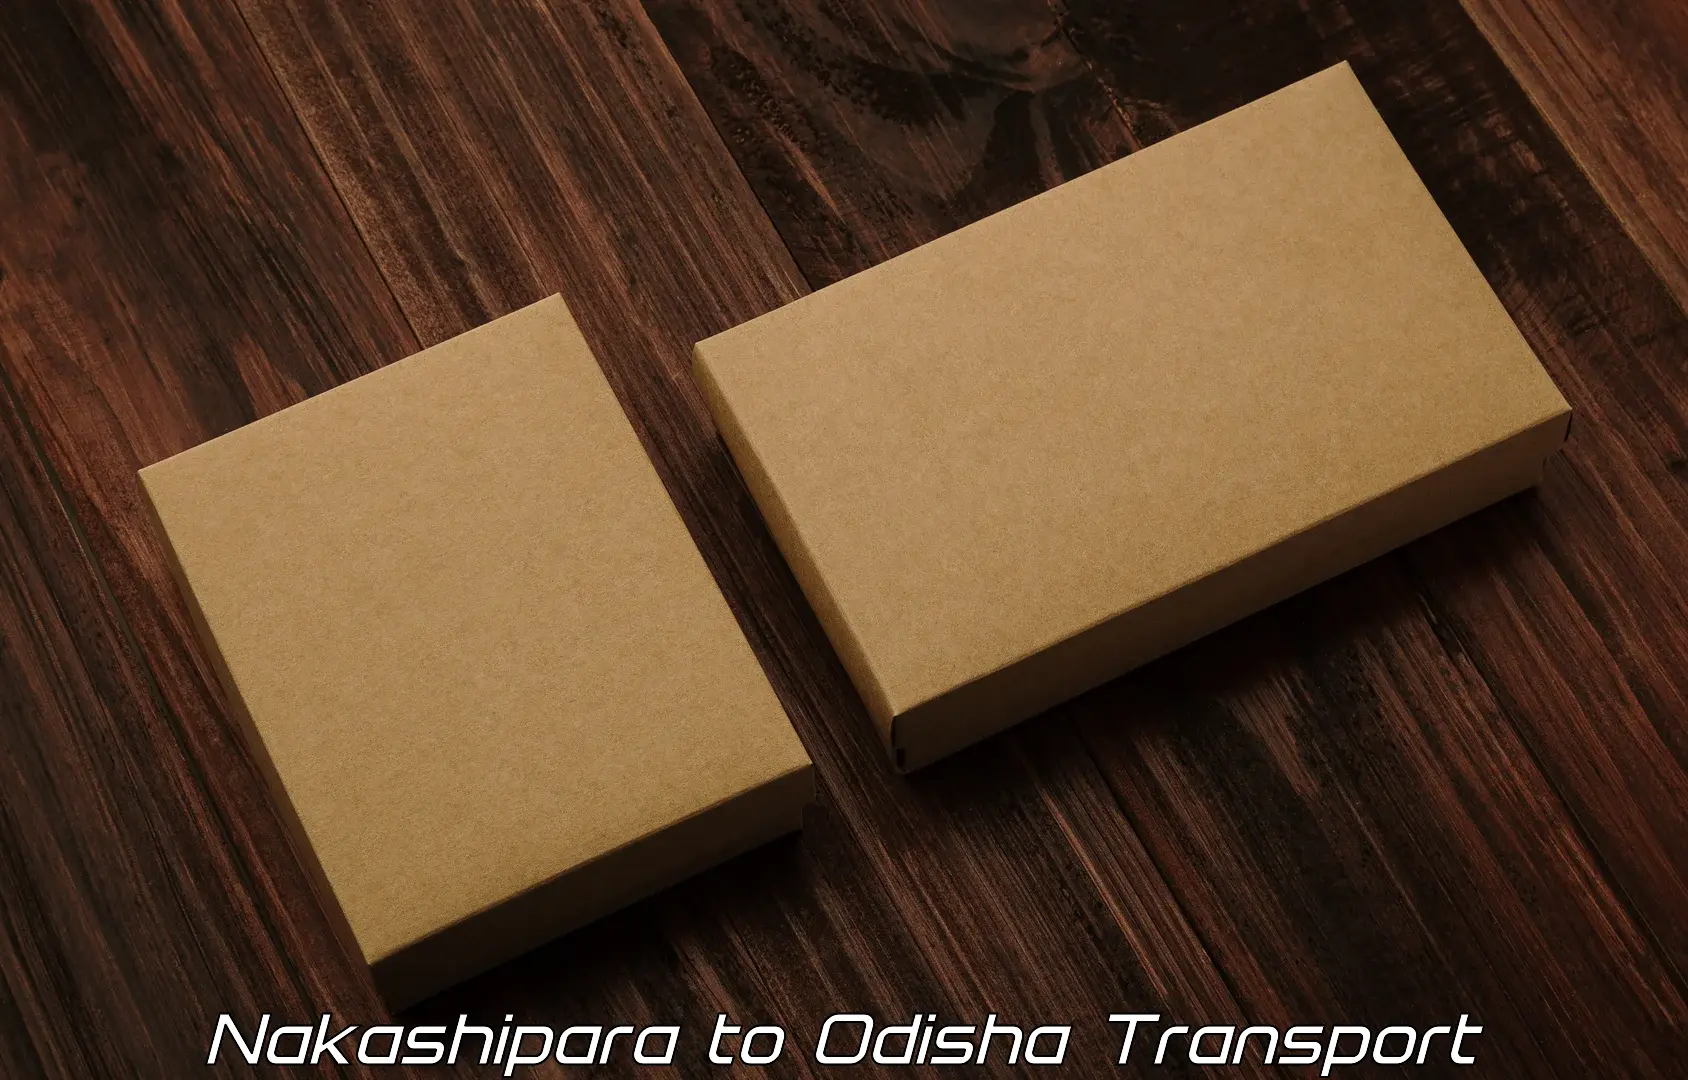 Transport shared services Nakashipara to Ukhunda